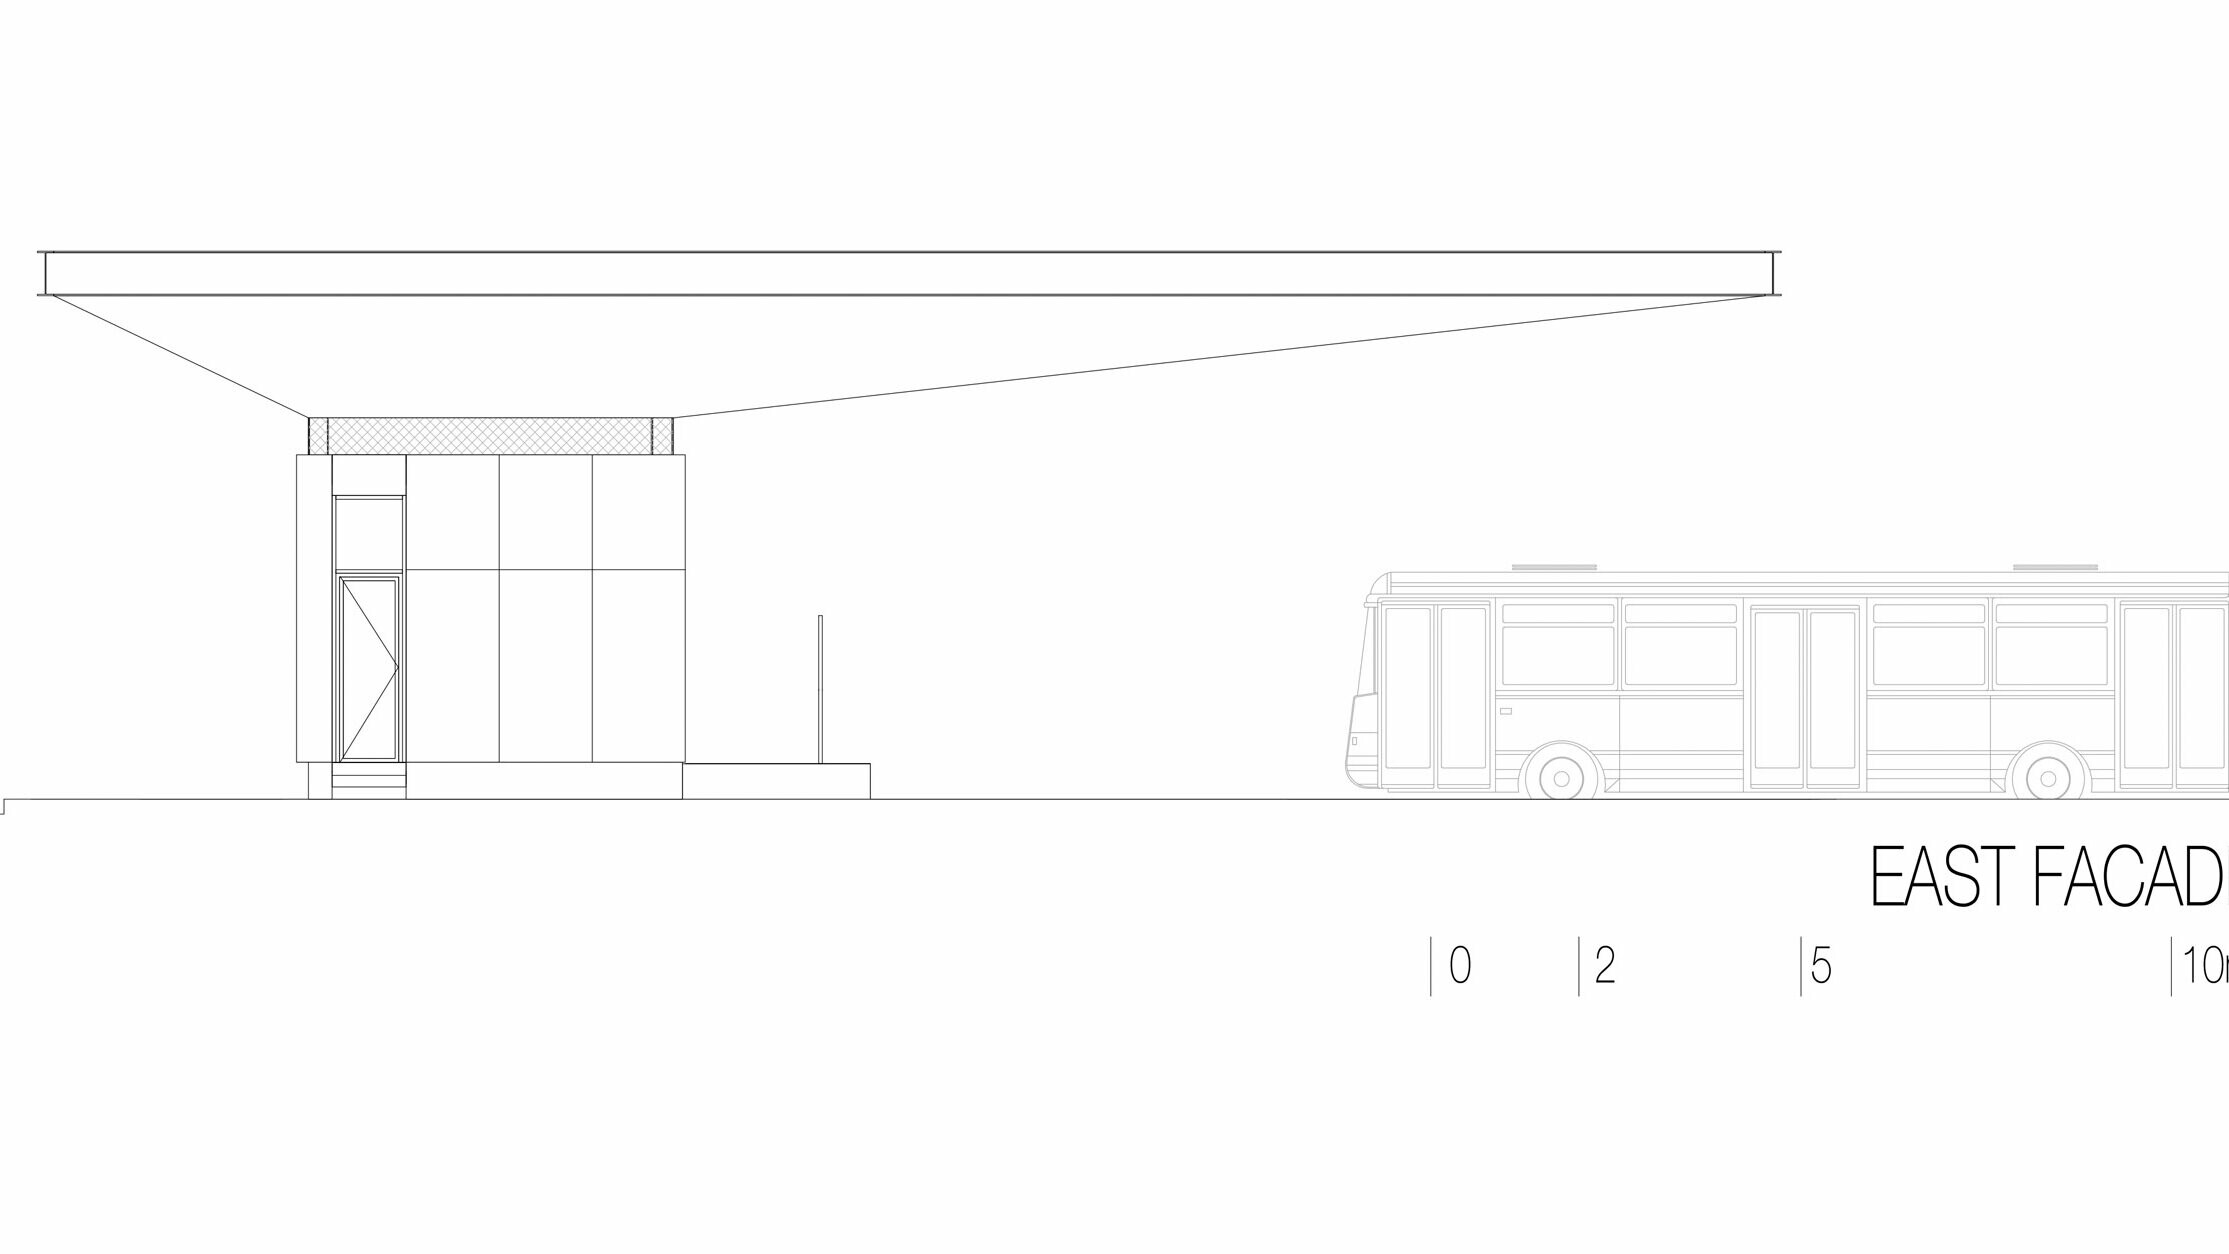 Cette esquisse montre la vue est du hall de la gare routière « Autobusni Kolodvor Slavonski Brod » en Croatie. Cette illustration met en évidence la structure élancée et horizontale du toit Prefalz blanc de PREFA, qui s'étire sur toute la longueur du bâtiment. Le toit abrite un corps de bâtiment rectangulaire aux lignes épurées avec de grandes surfaces vitrées. Un bus, à droite de l'esquisse, montre les proportions du hall de gare à l'échelle d'un véhicule. La vue est met en valeur l'architecture moderne et fonctionnelle du hall de gare, auquel le verre et de l'aluminium confèrent une atmosphère lumineuse et accueillante.